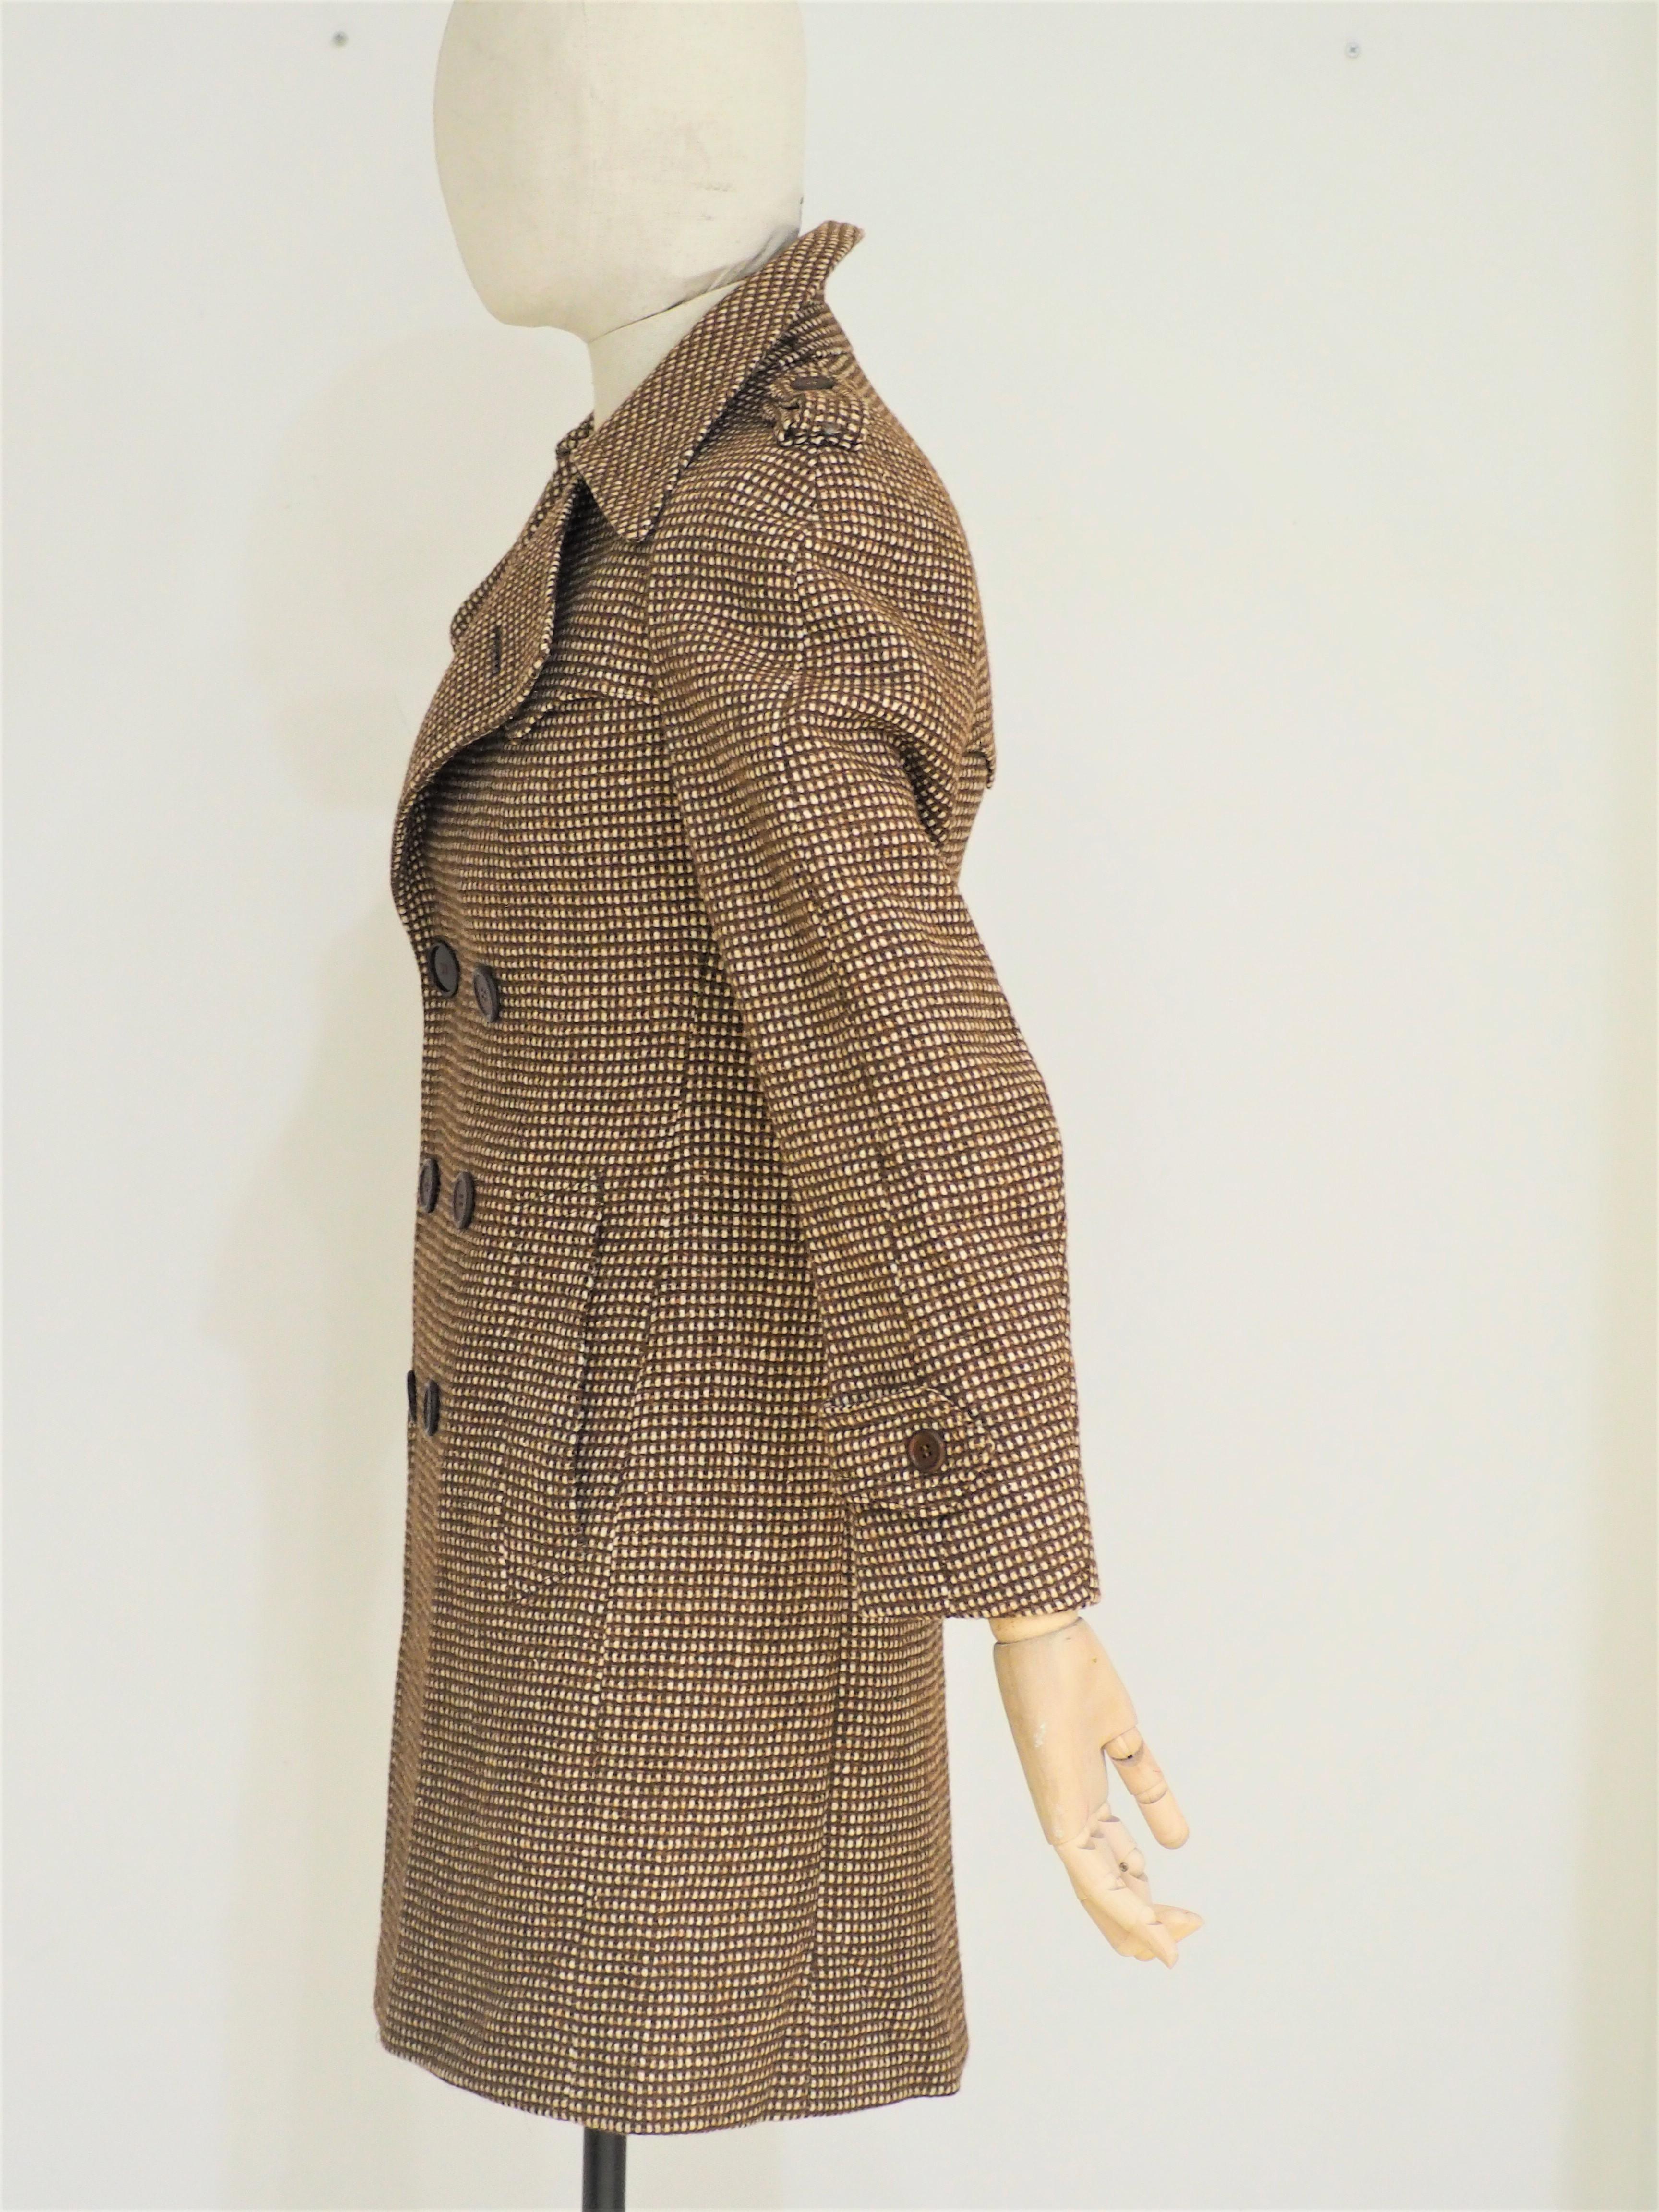 Brauner Mantel Facis Ventalli
vollständig in Italien hergestellt in Größe 48